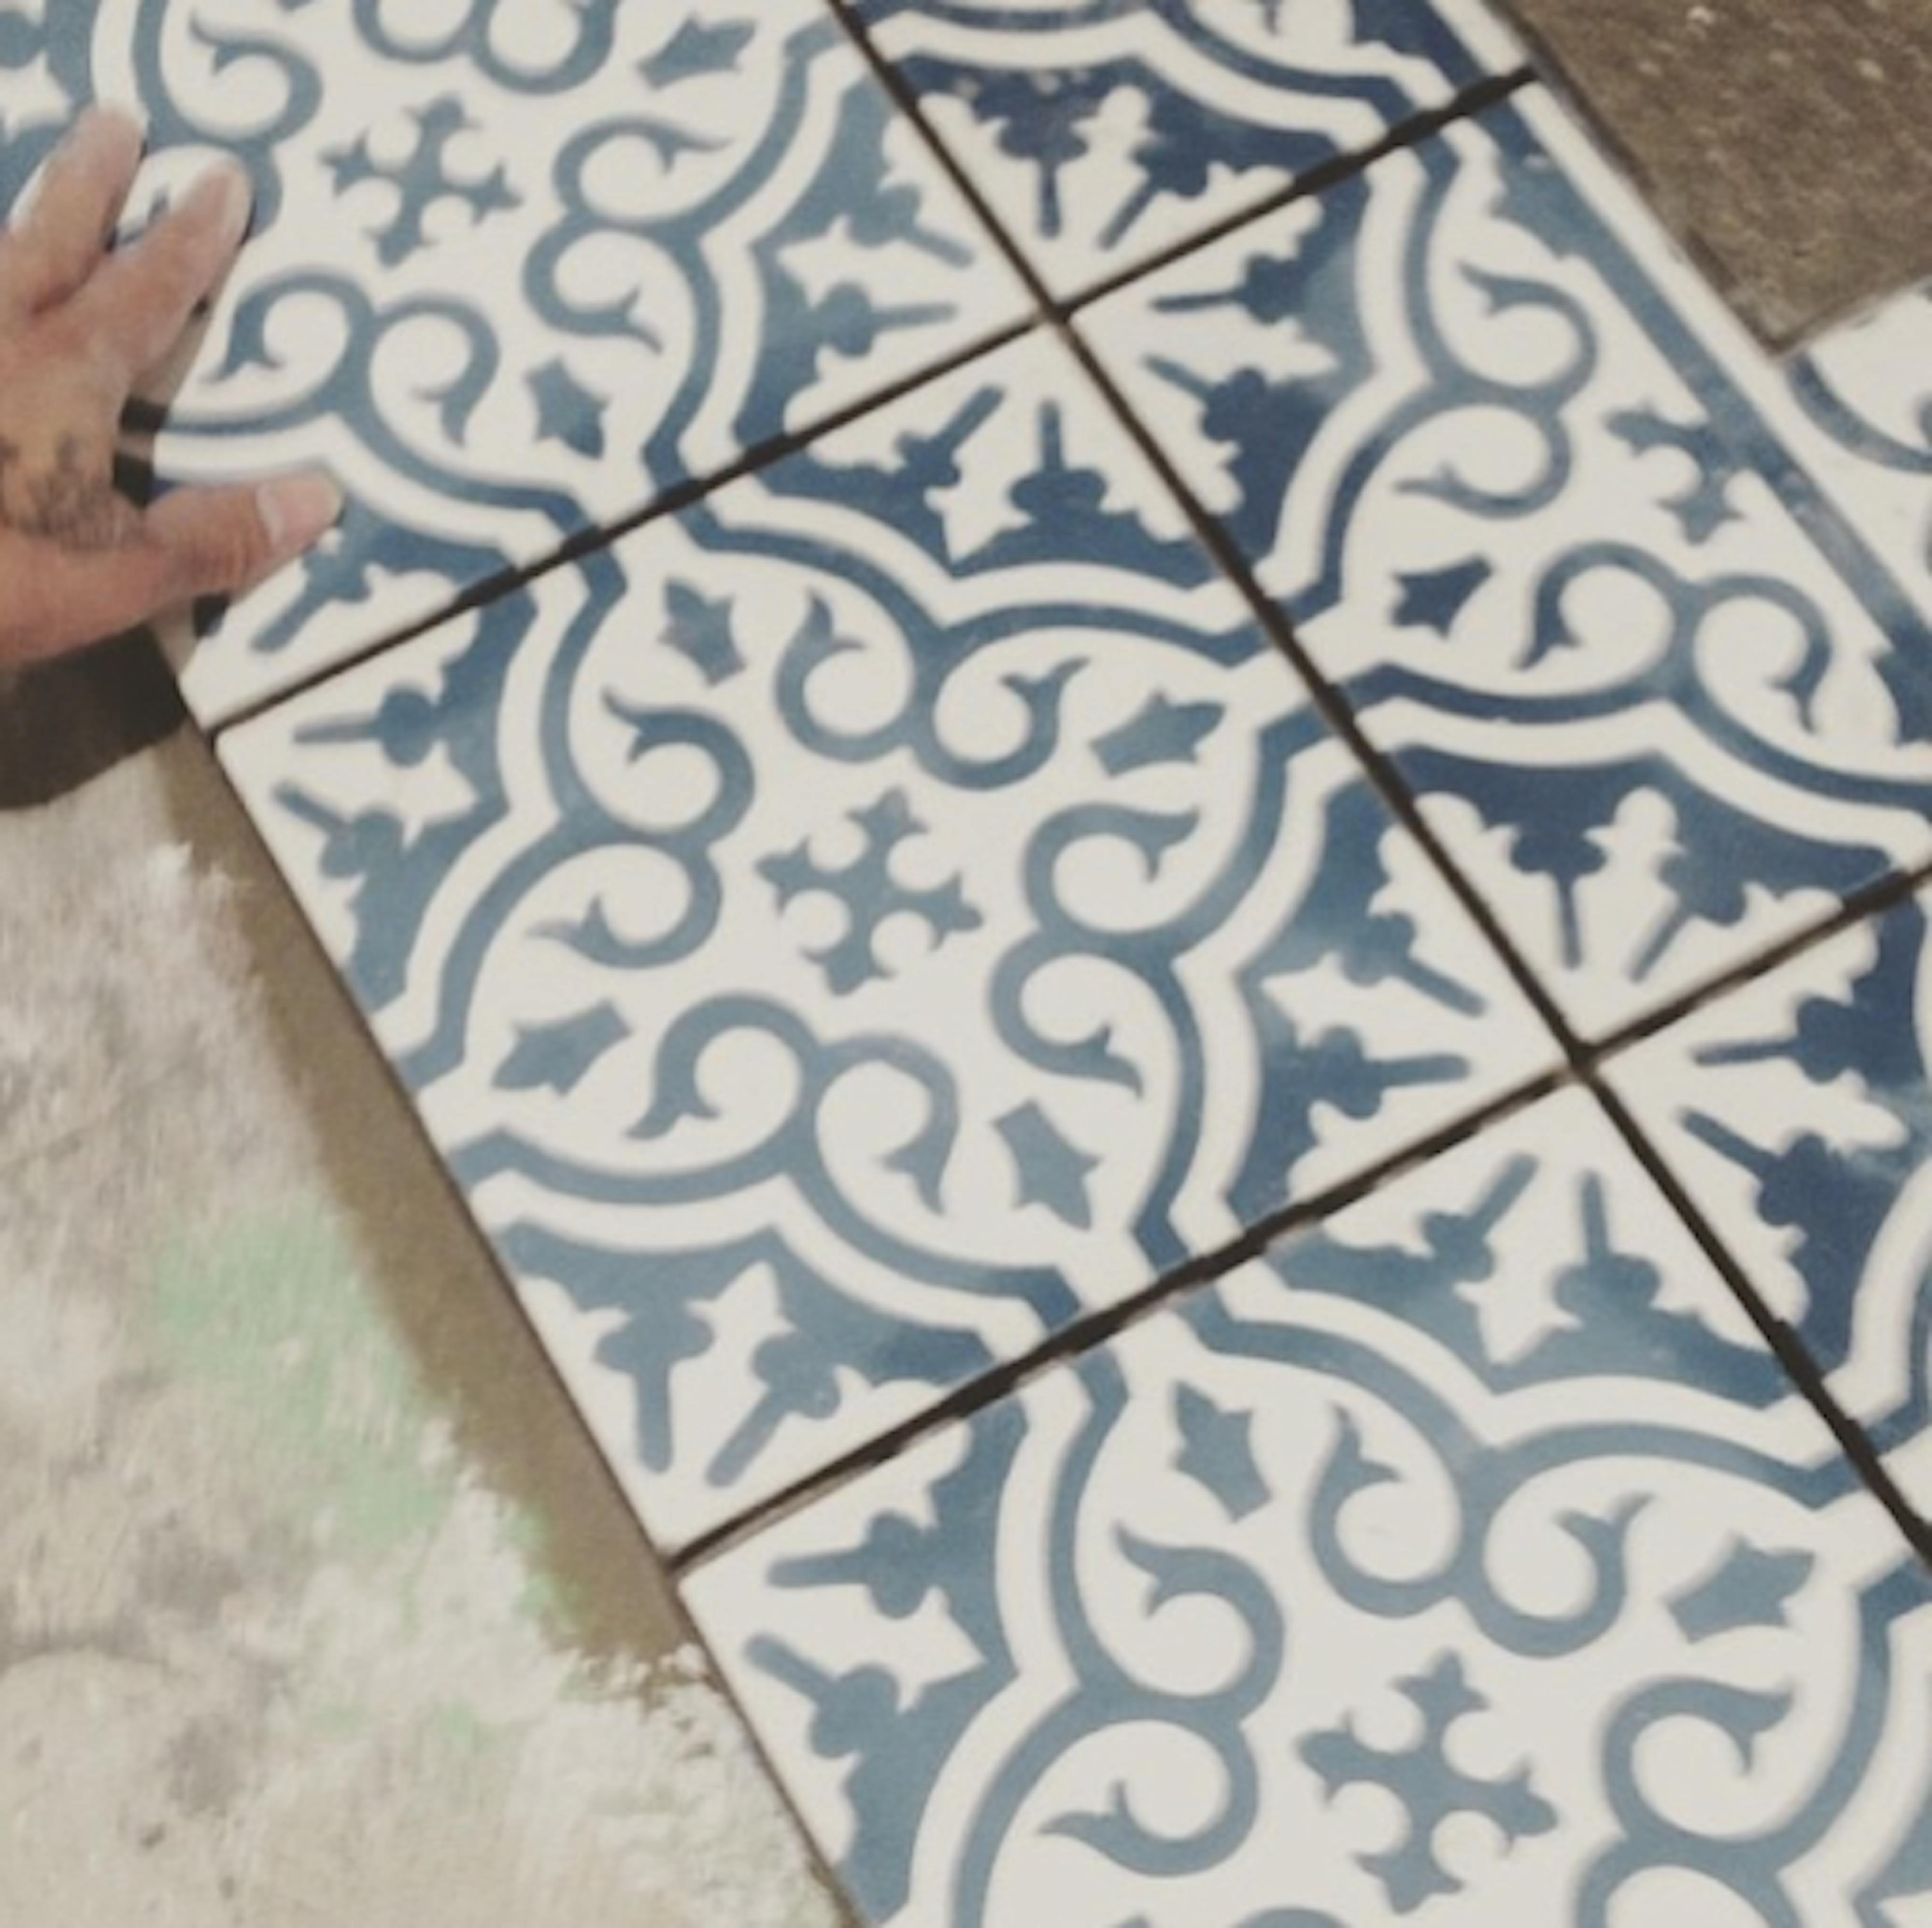 tiles in toronto café